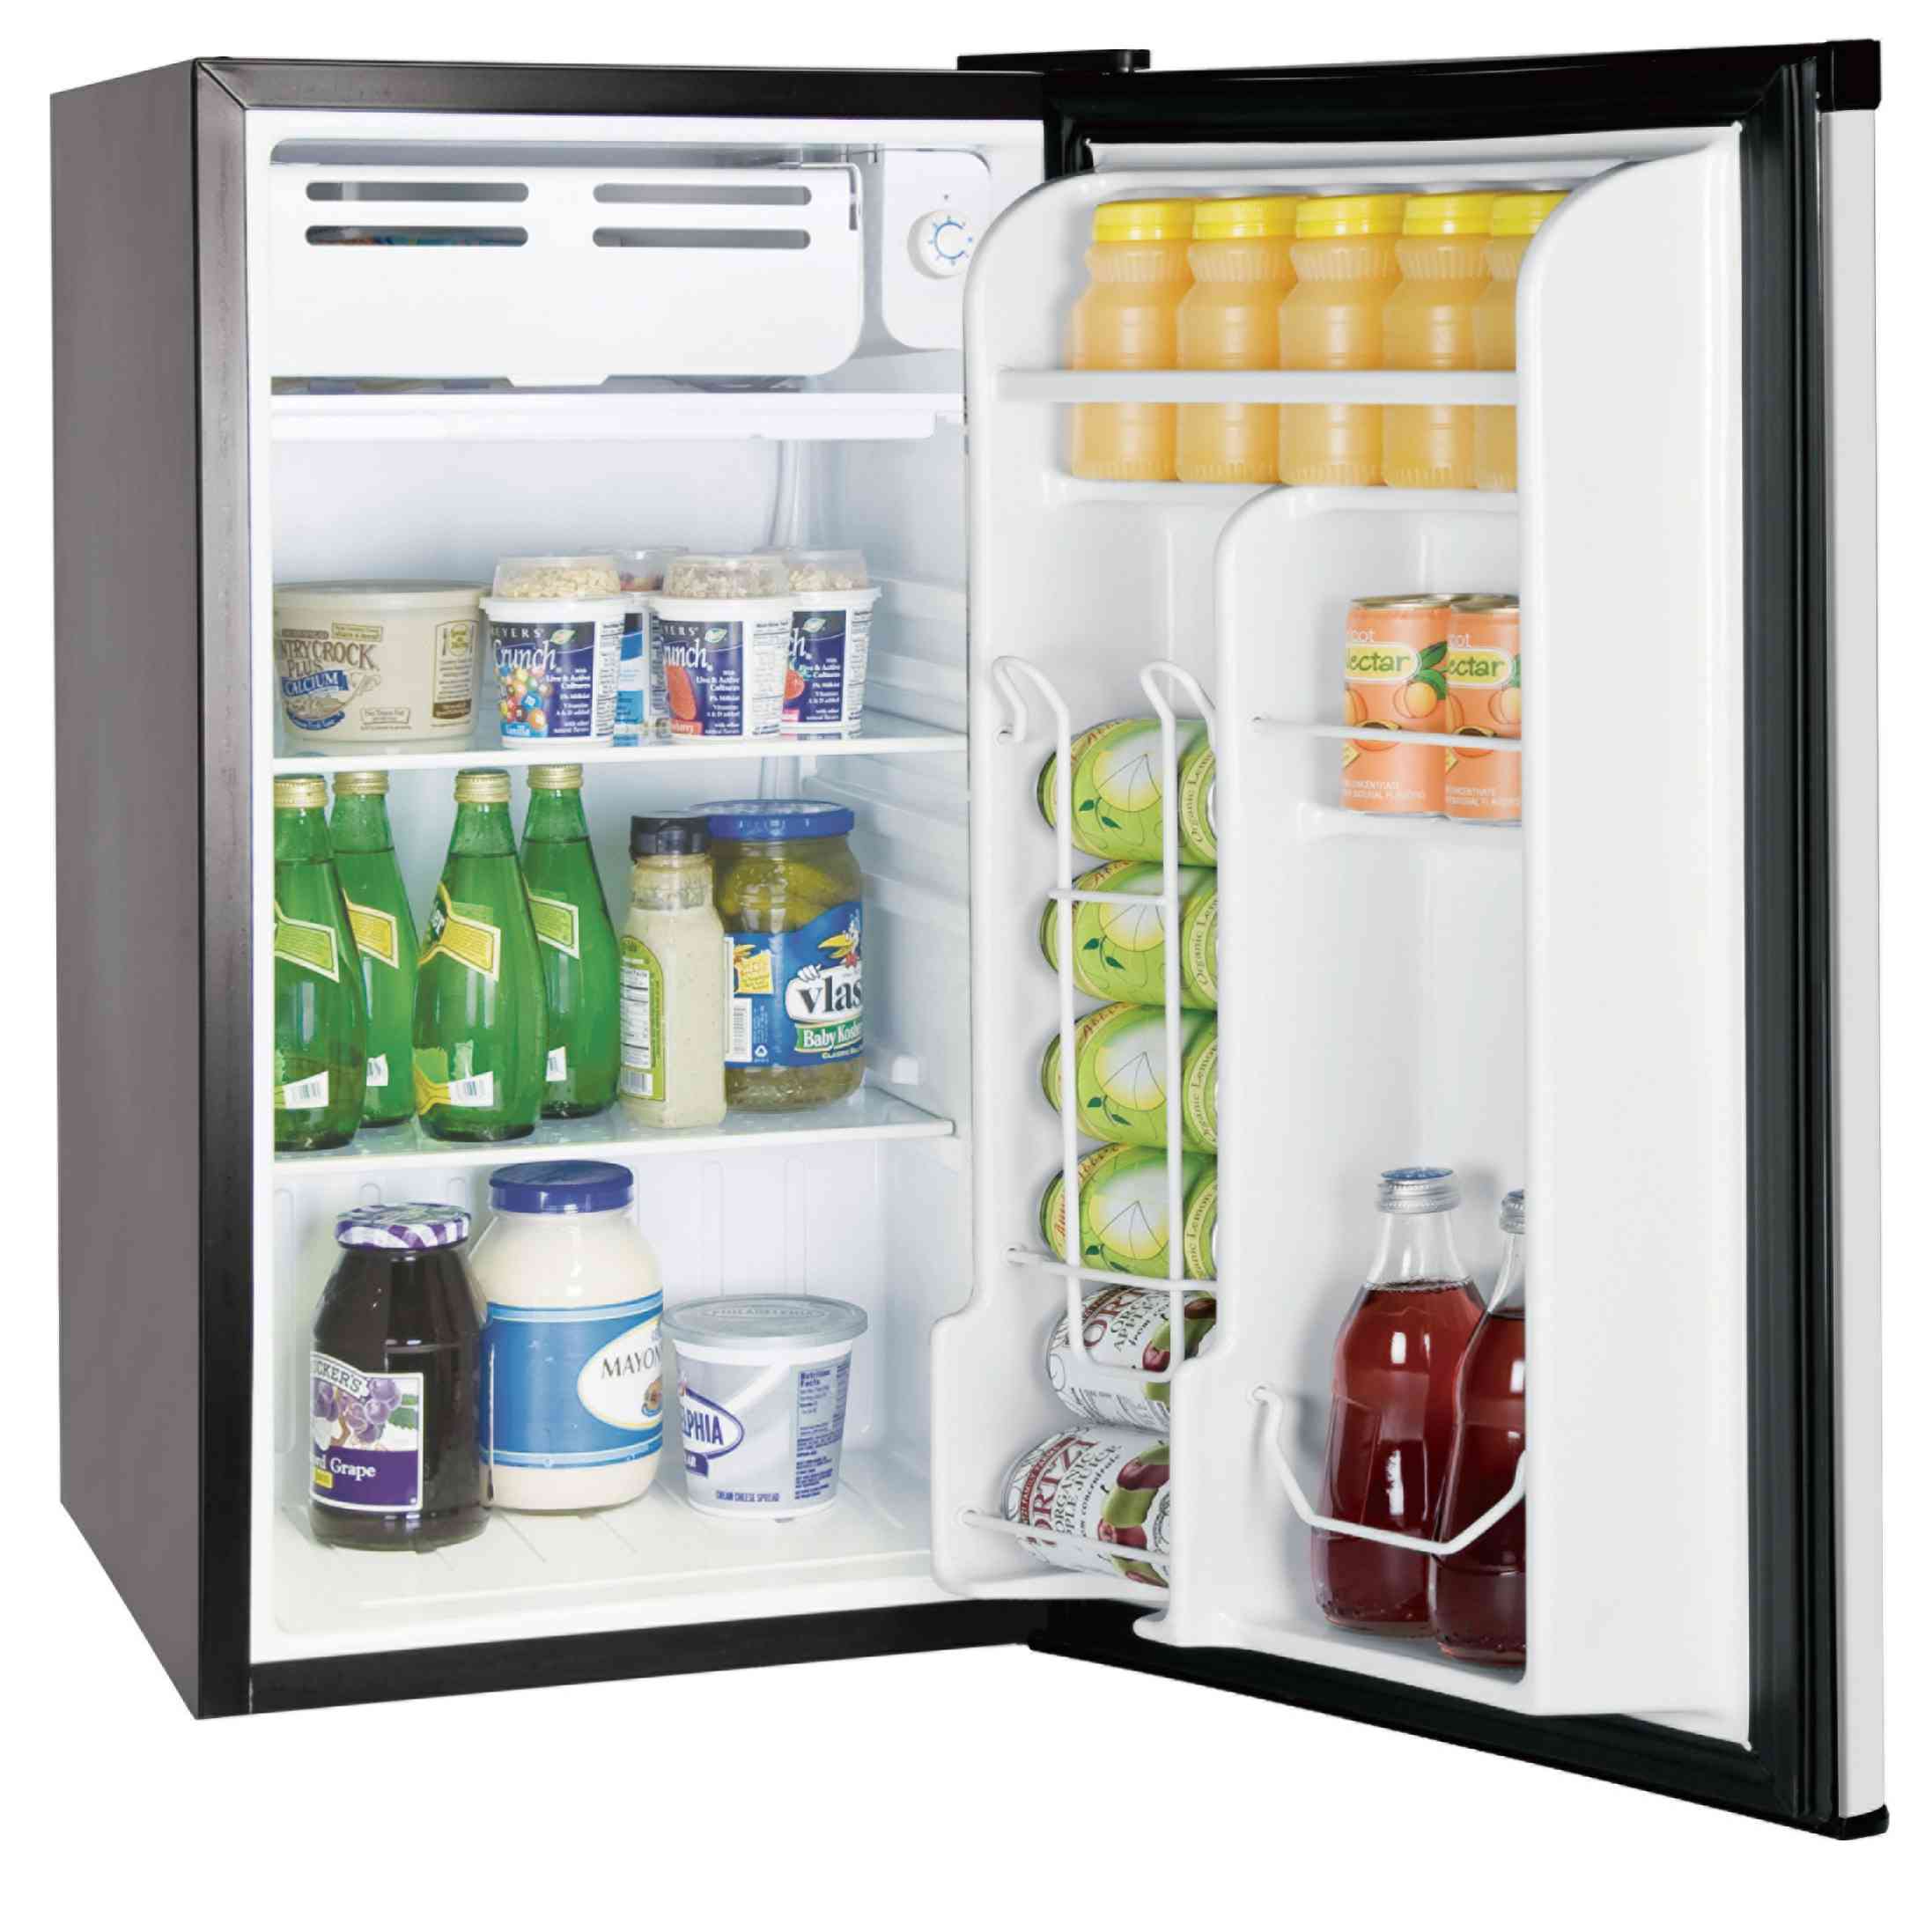 3.2CUFT kompakt køleskab, lavpris køleskab, OEM/ODM med tilpasningstjenester